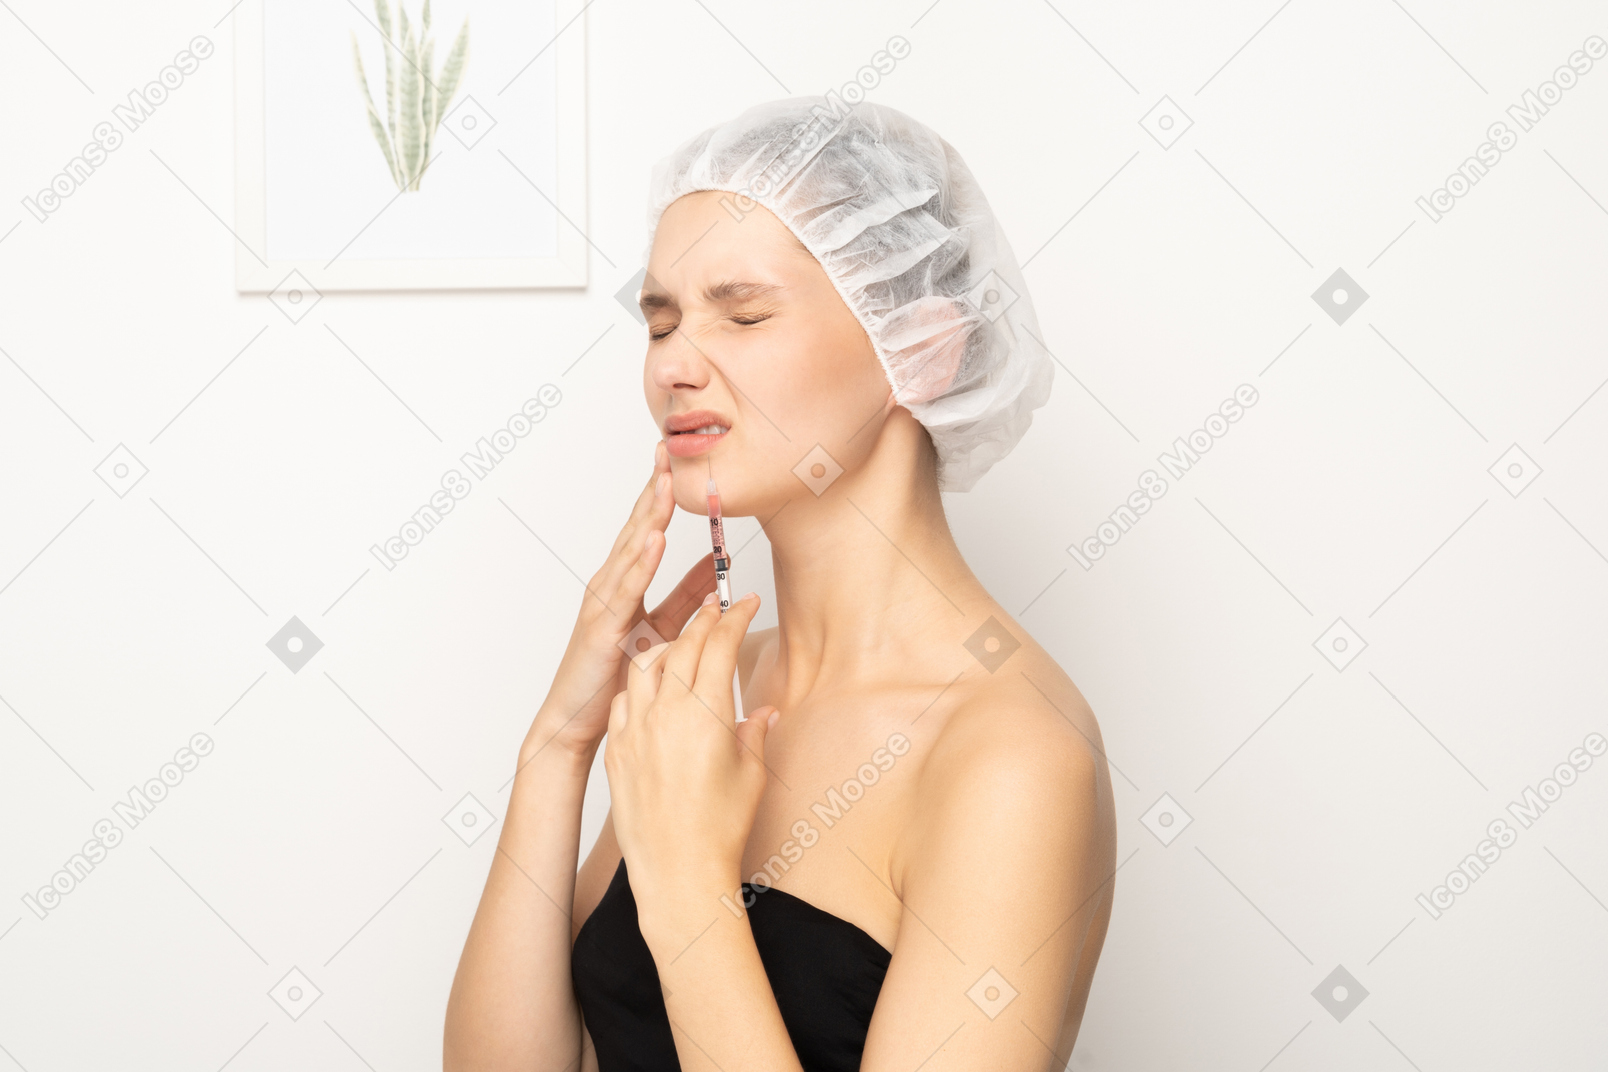 Frau mit schmerzen hält spritze